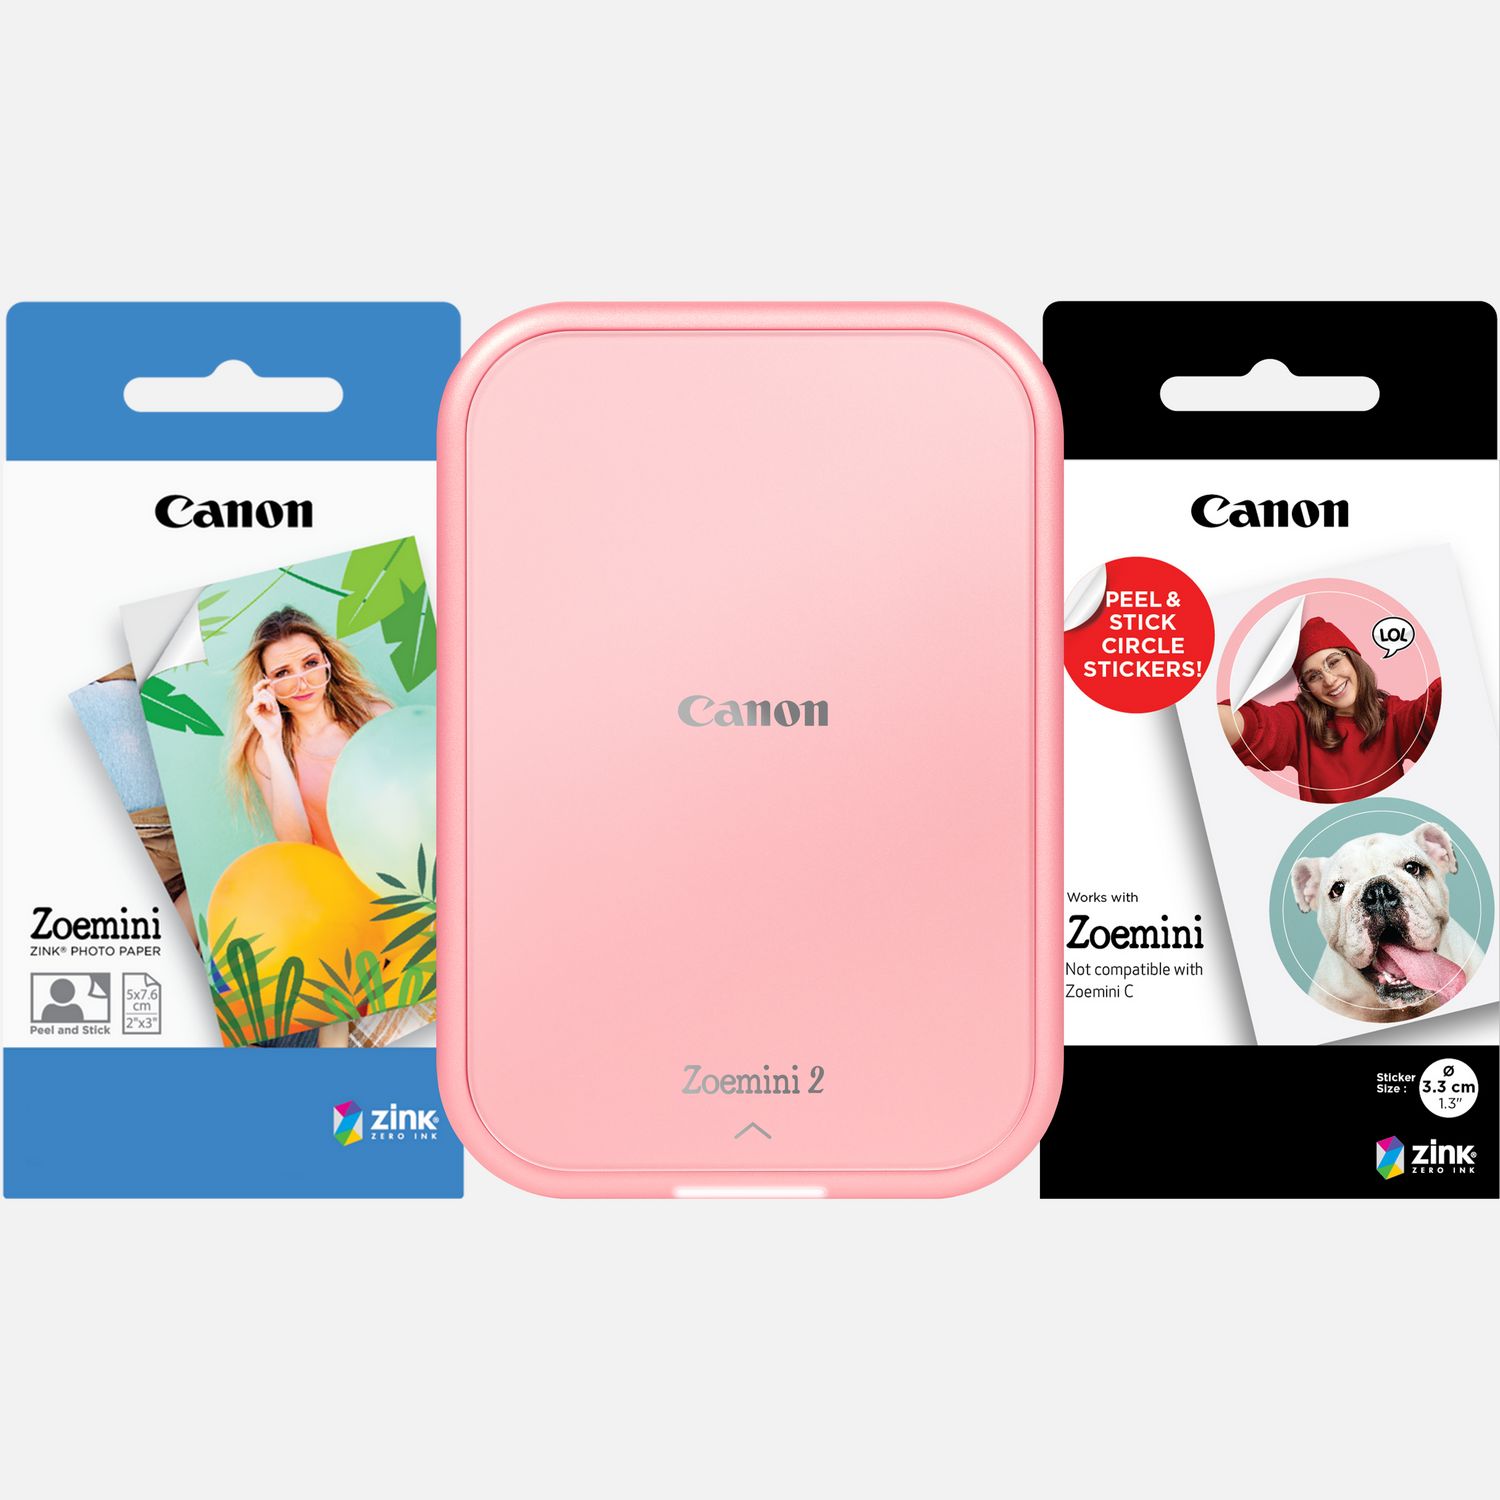 Image of Stampante fotografica portatile a colori Canon Zoemini 2, rosa gold + Carta fotografica ZINK™ 5 x 7,6 cm (20 fogli) + Carta adesiva circolare ZINK™ 3,3 cm (10 fogli)